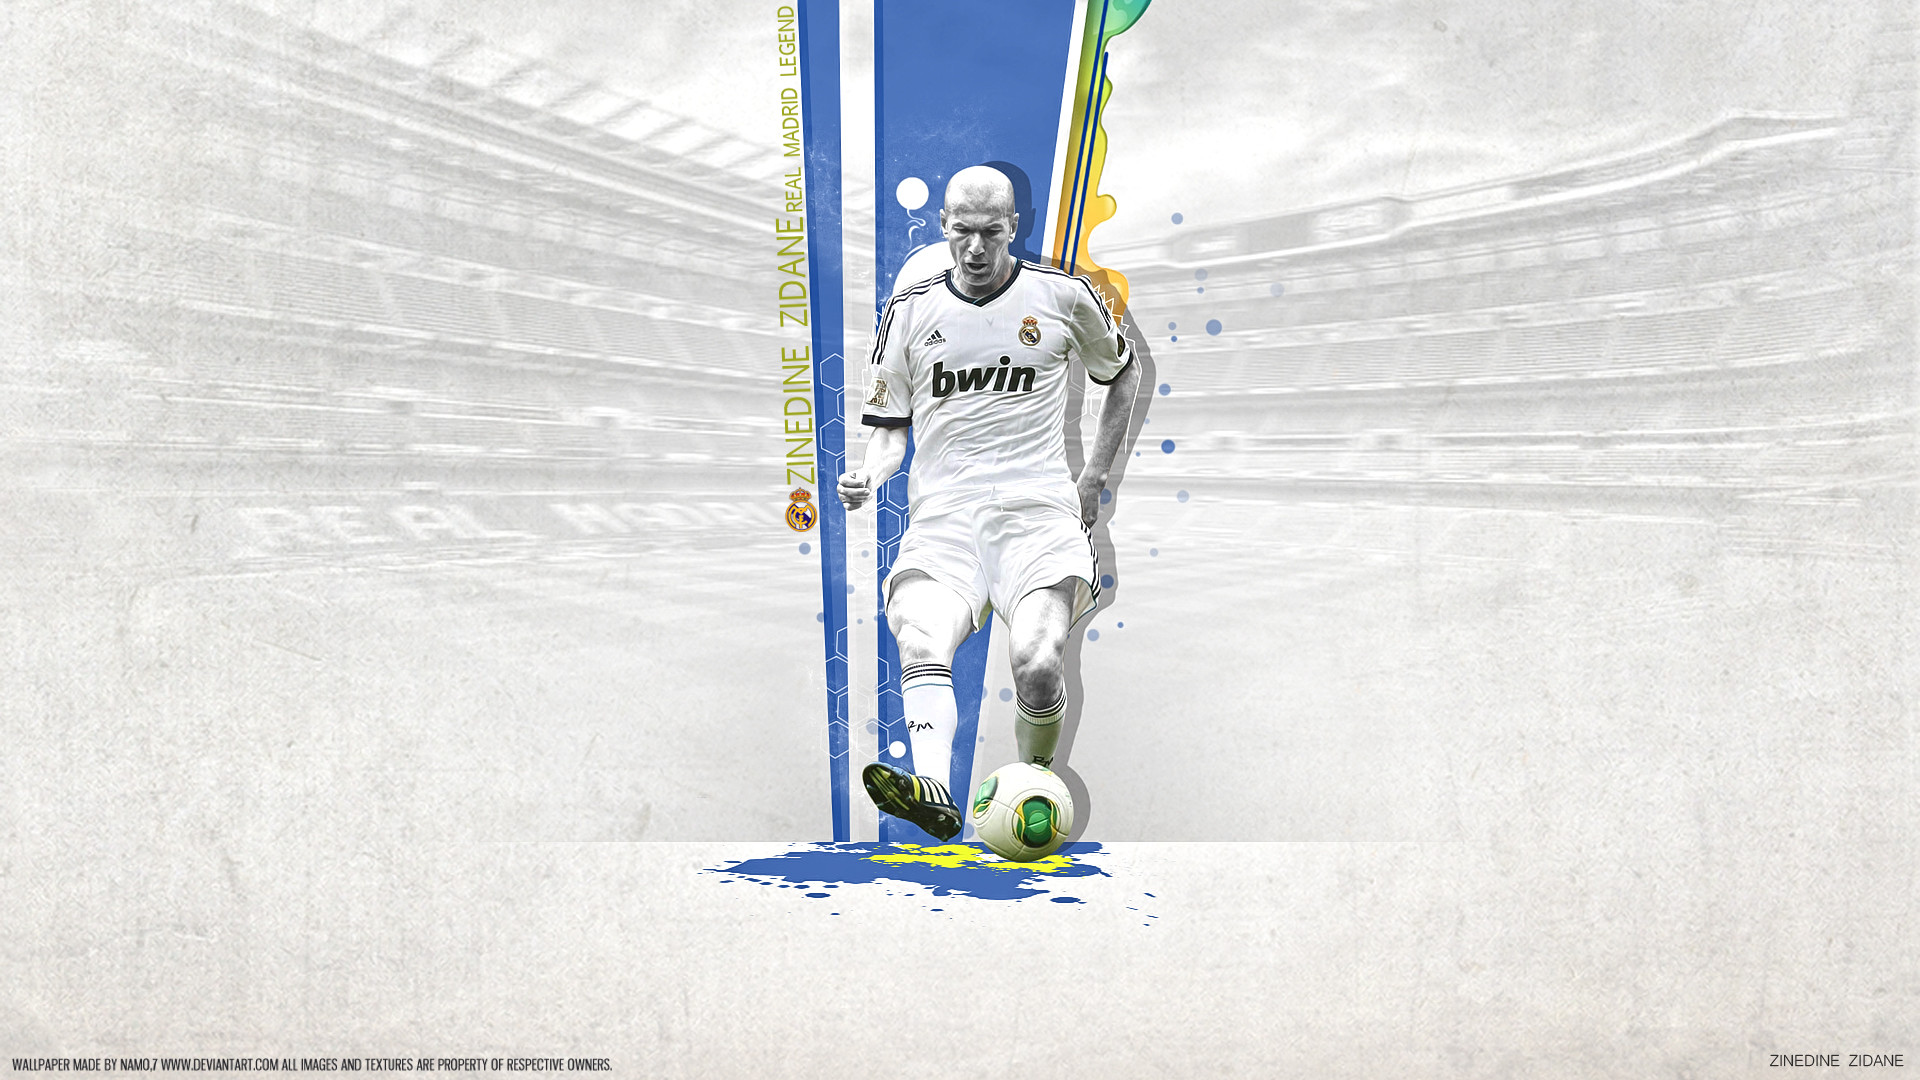 1920x1080 ... Zinedine Zidane 5 Real Madrid Legend By Namo,7 by 445578gfx